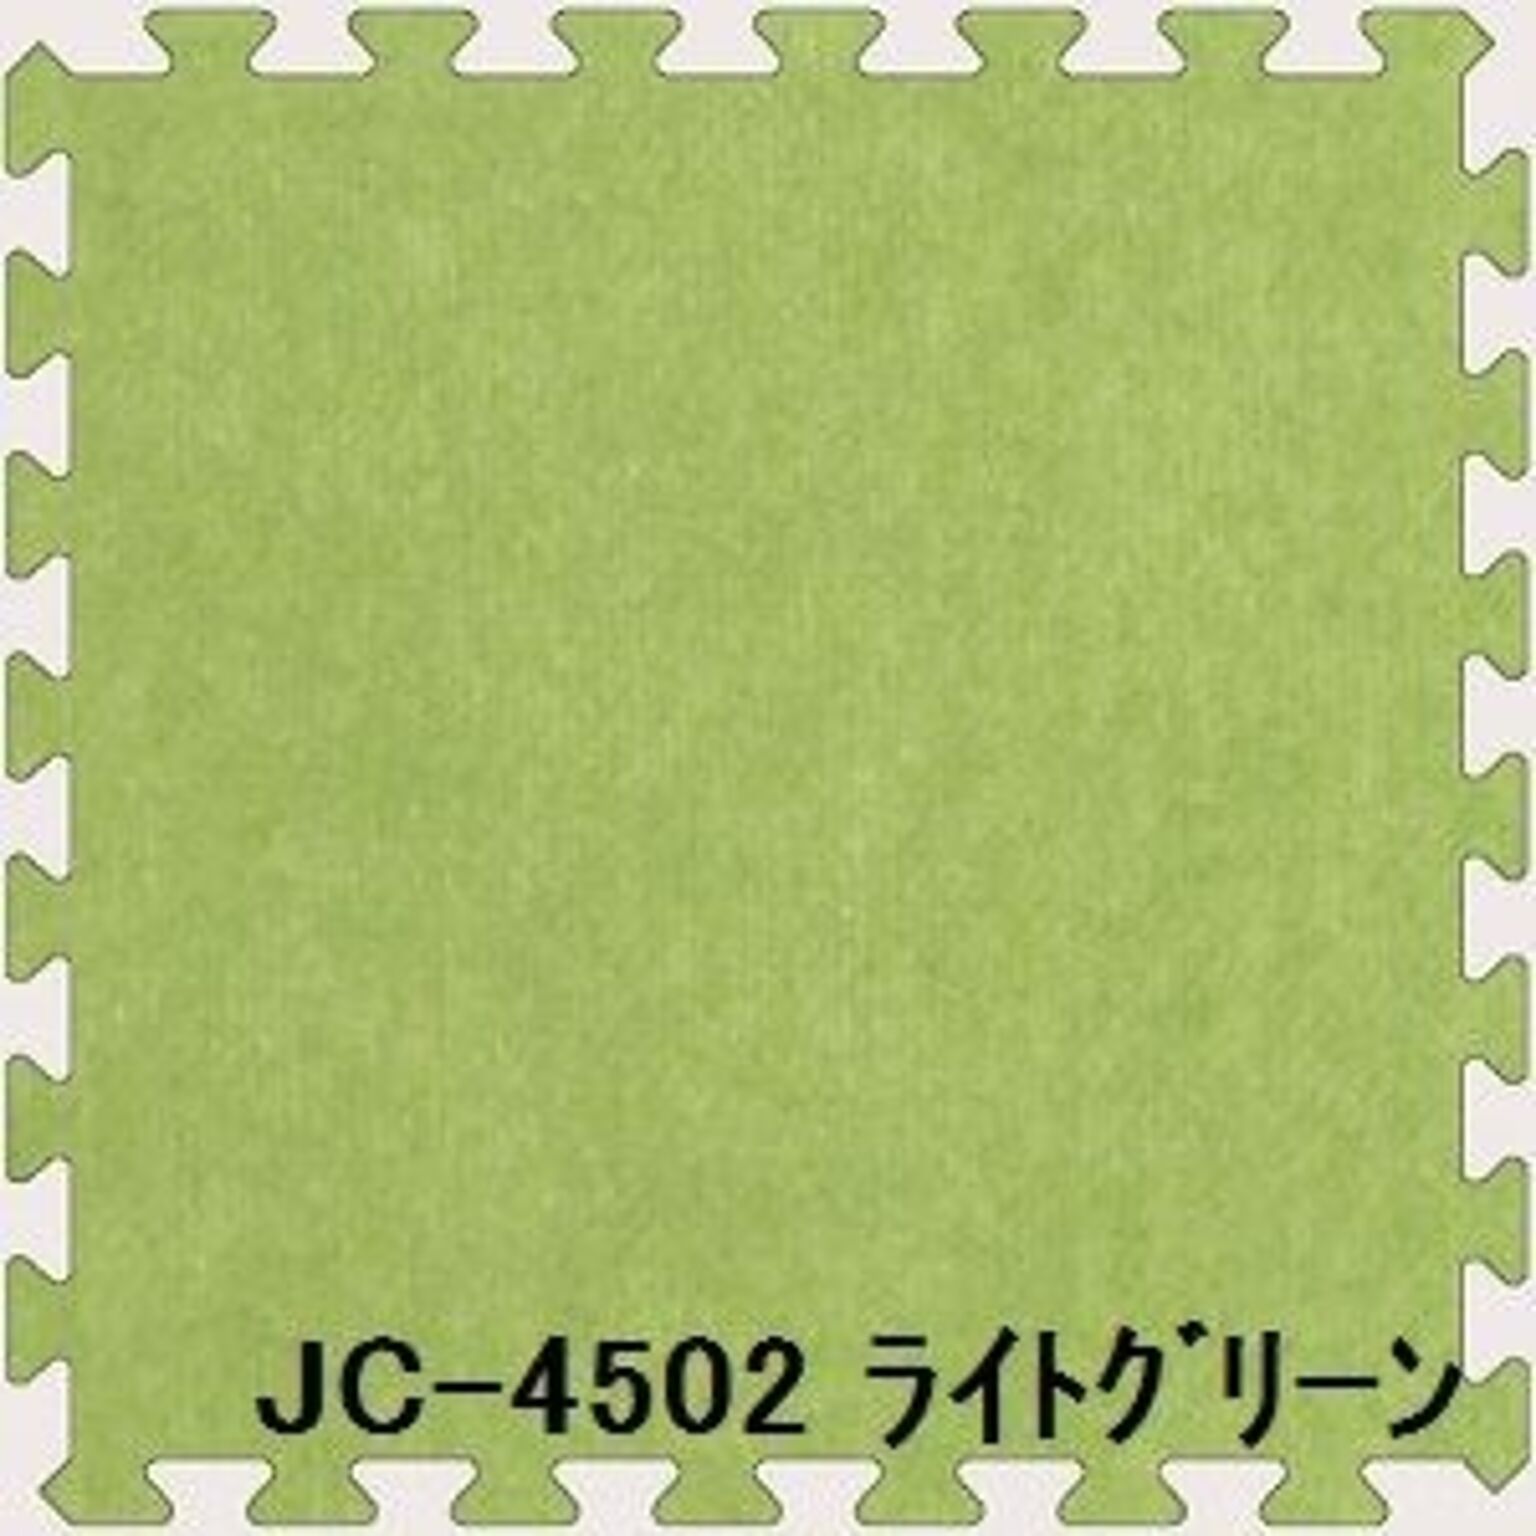 JC-45 ジョイントカーペット 16枚セット ライトグリーン 厚10mm×450mm